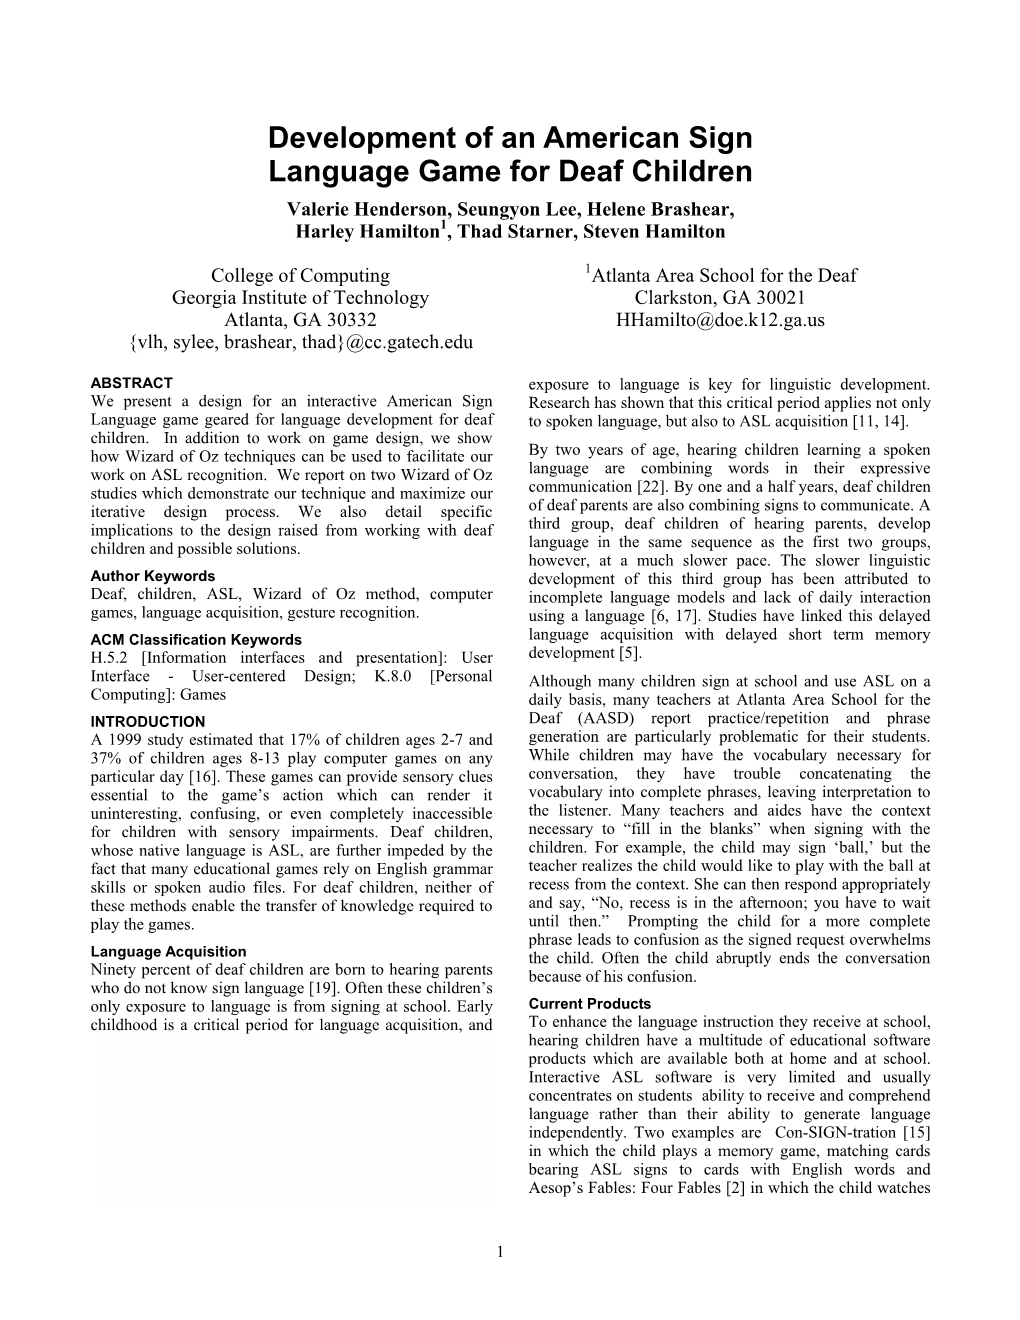 Development of an American Sign Language Game for Deaf Children Valerie Henderson, Seungyon Lee, Helene Brashear, Harley Hamilton1, Thad Starner, Steven Hamilton